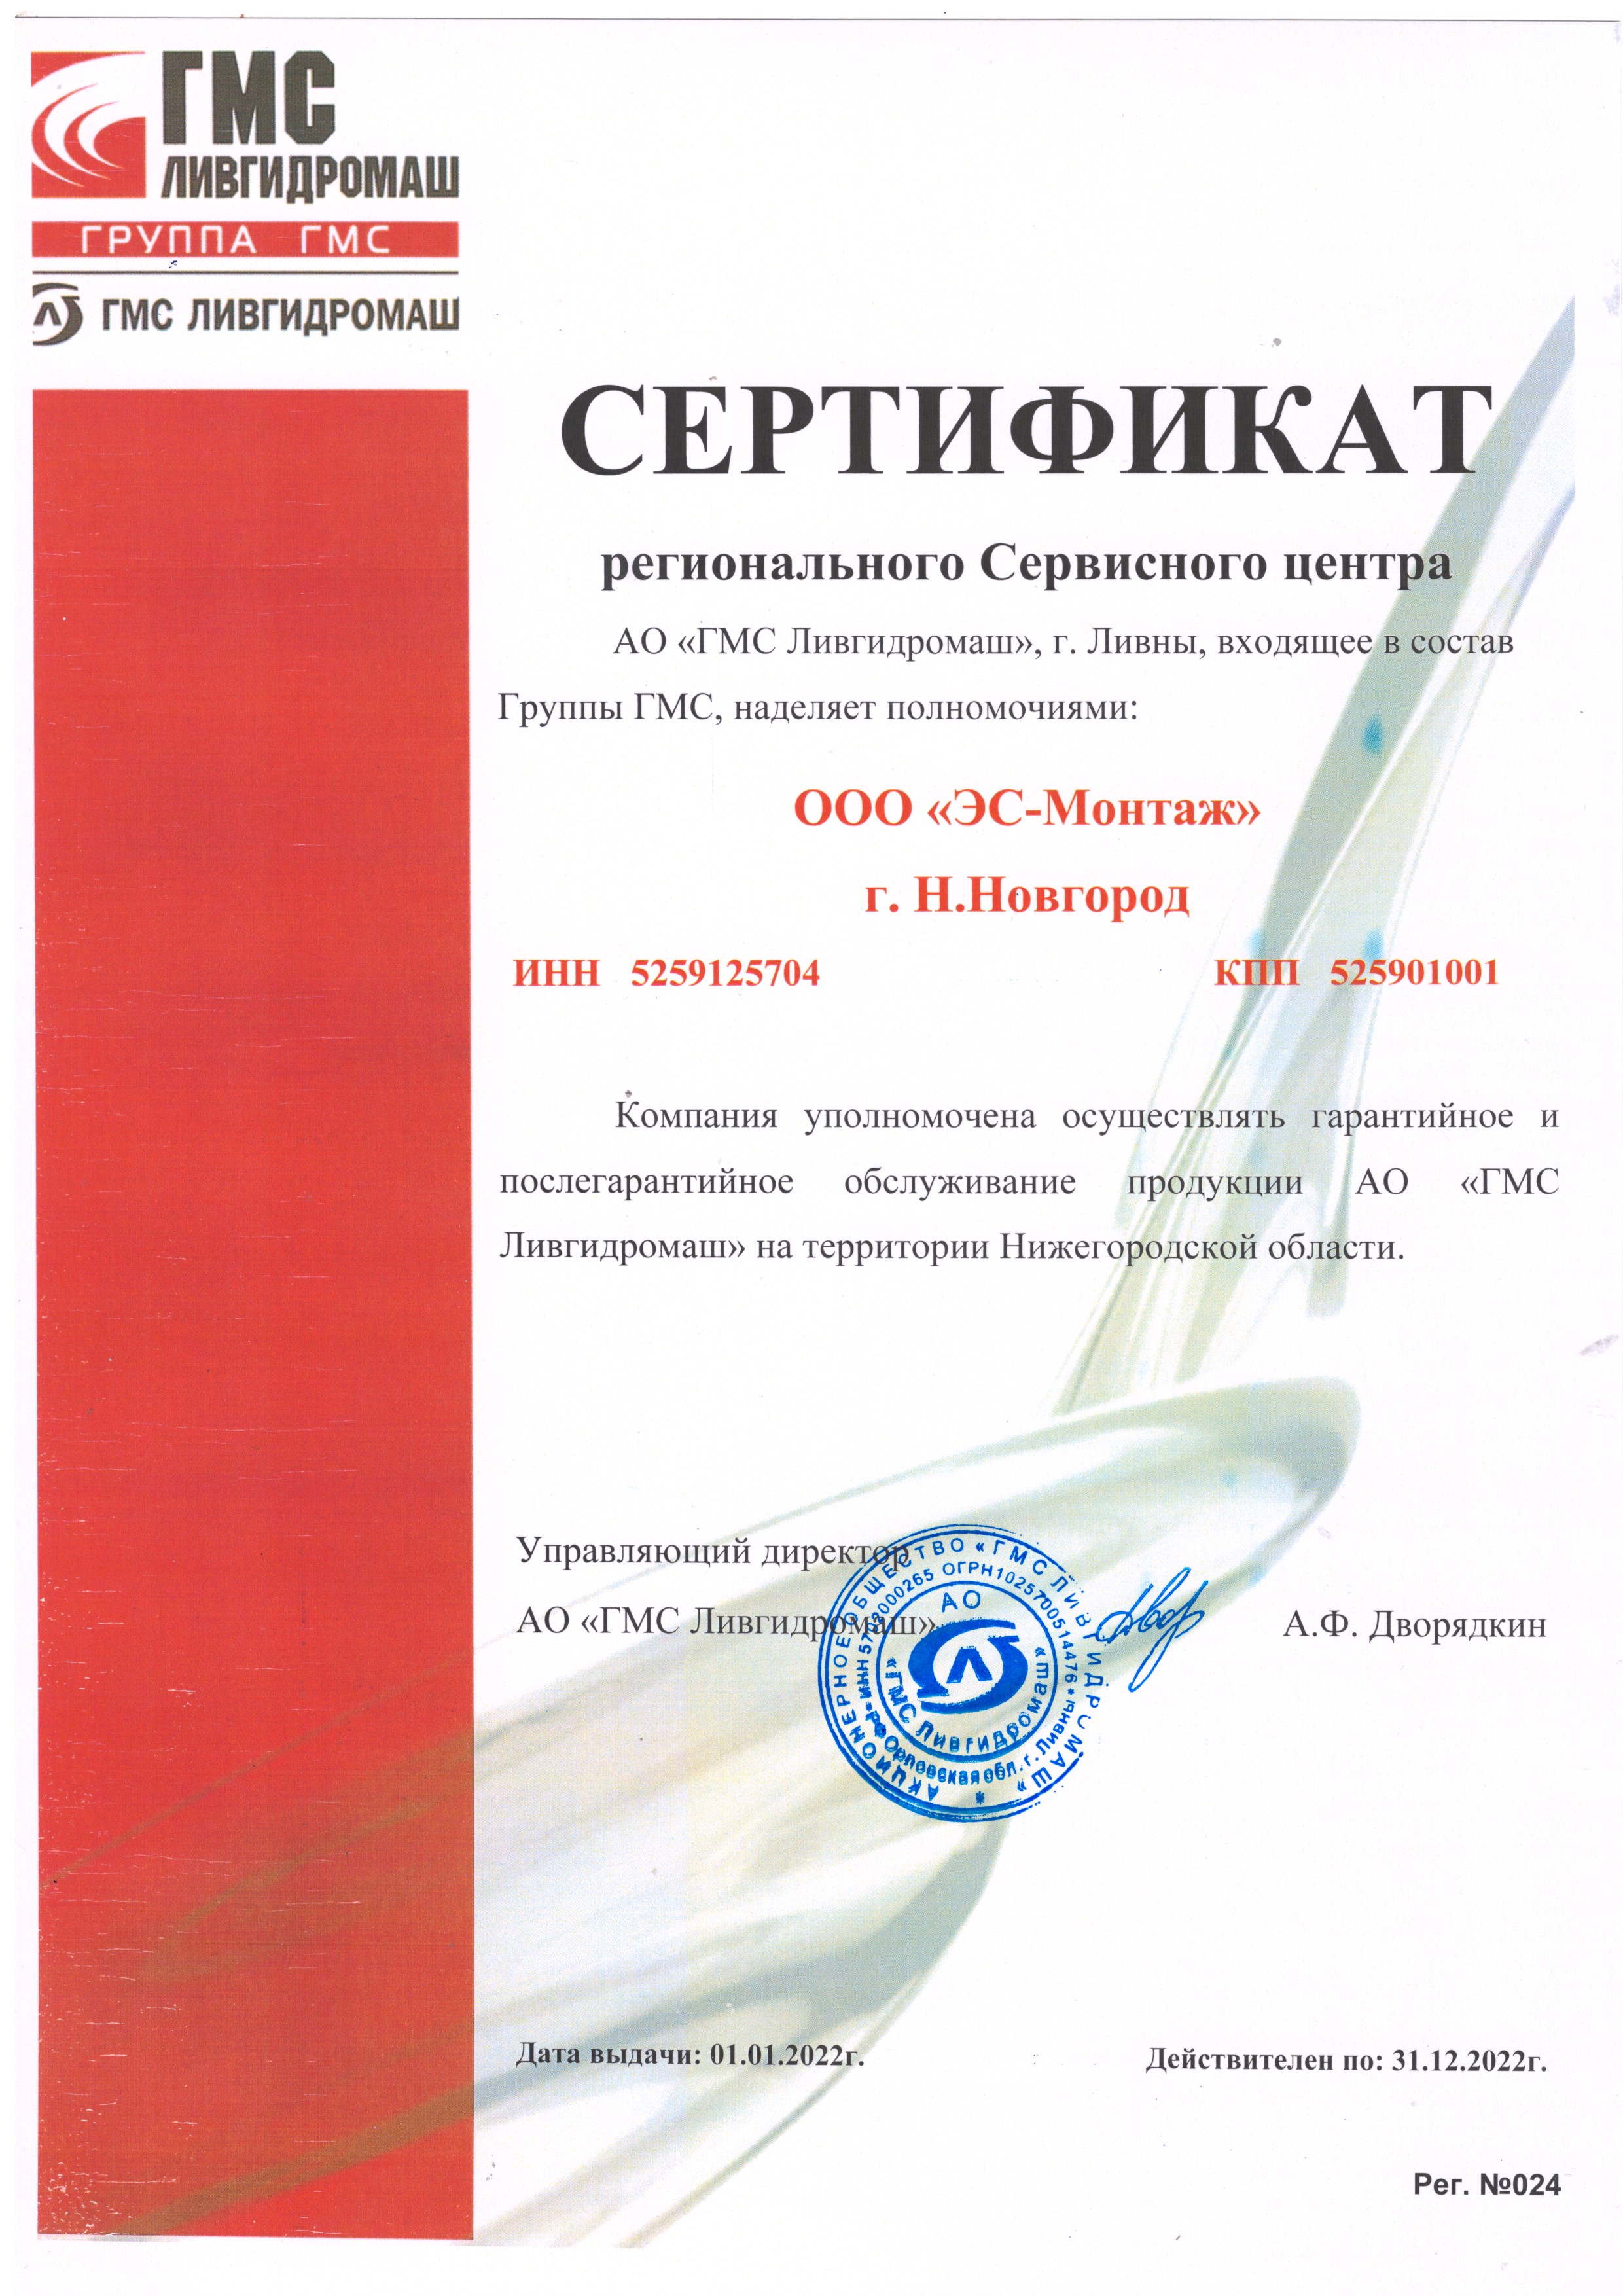 Сертификат сервисного центра АО "ГМС Ливгидромаш"